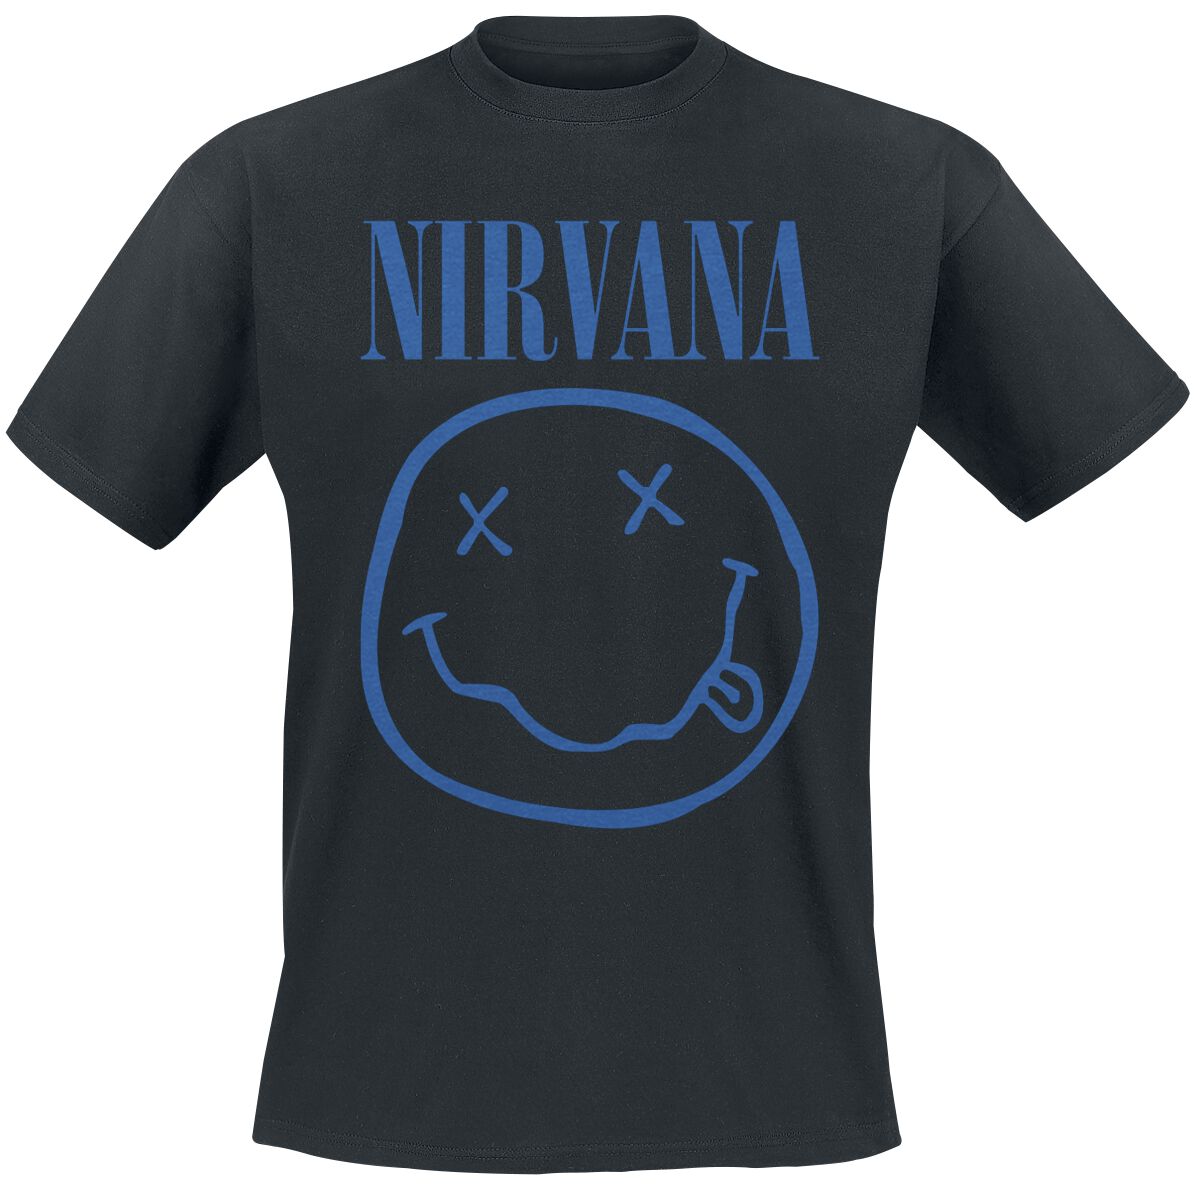 Nirvana T-Shirt - Blue Smiley - S bis XXL - für Männer - Größe XL - schwarz  - Lizenziertes Merchandise!